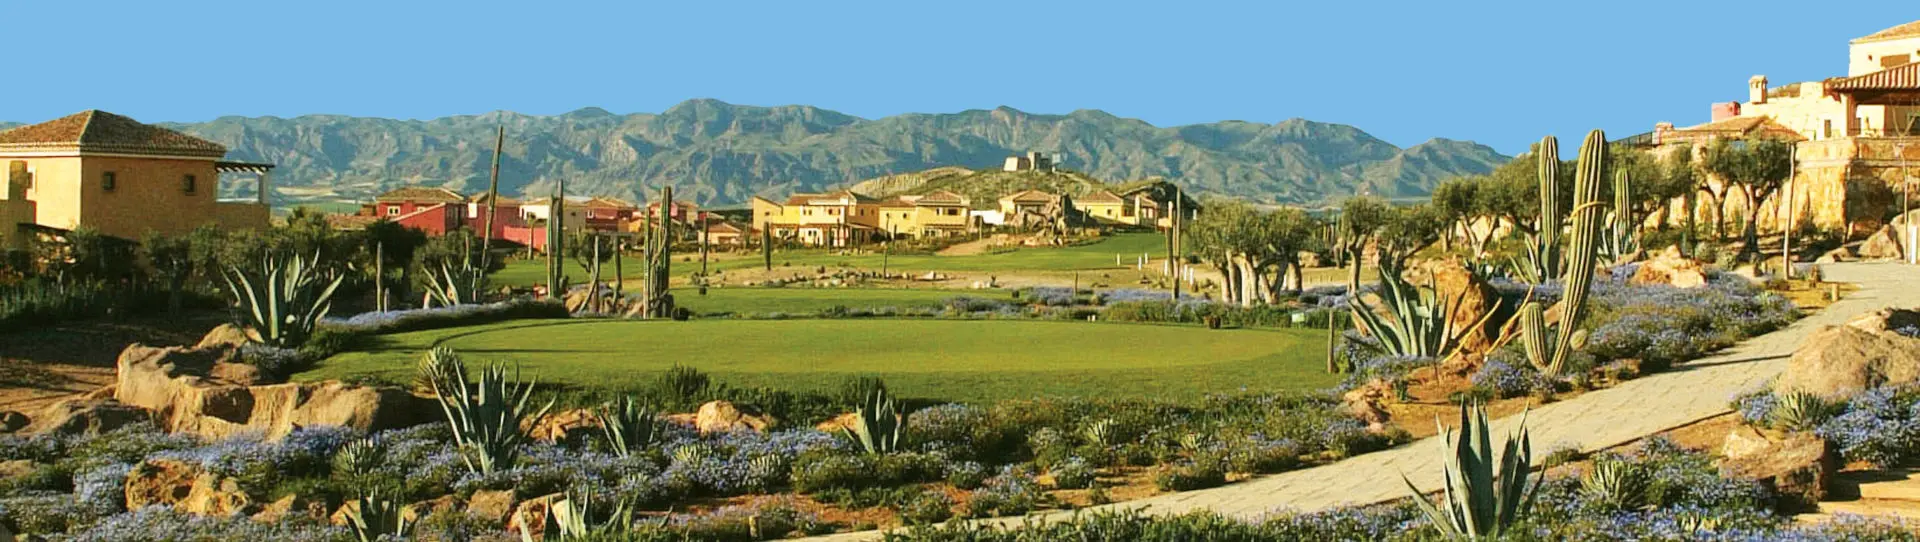 Spain golf courses - Desert Springs Resort & GC - Photo 3